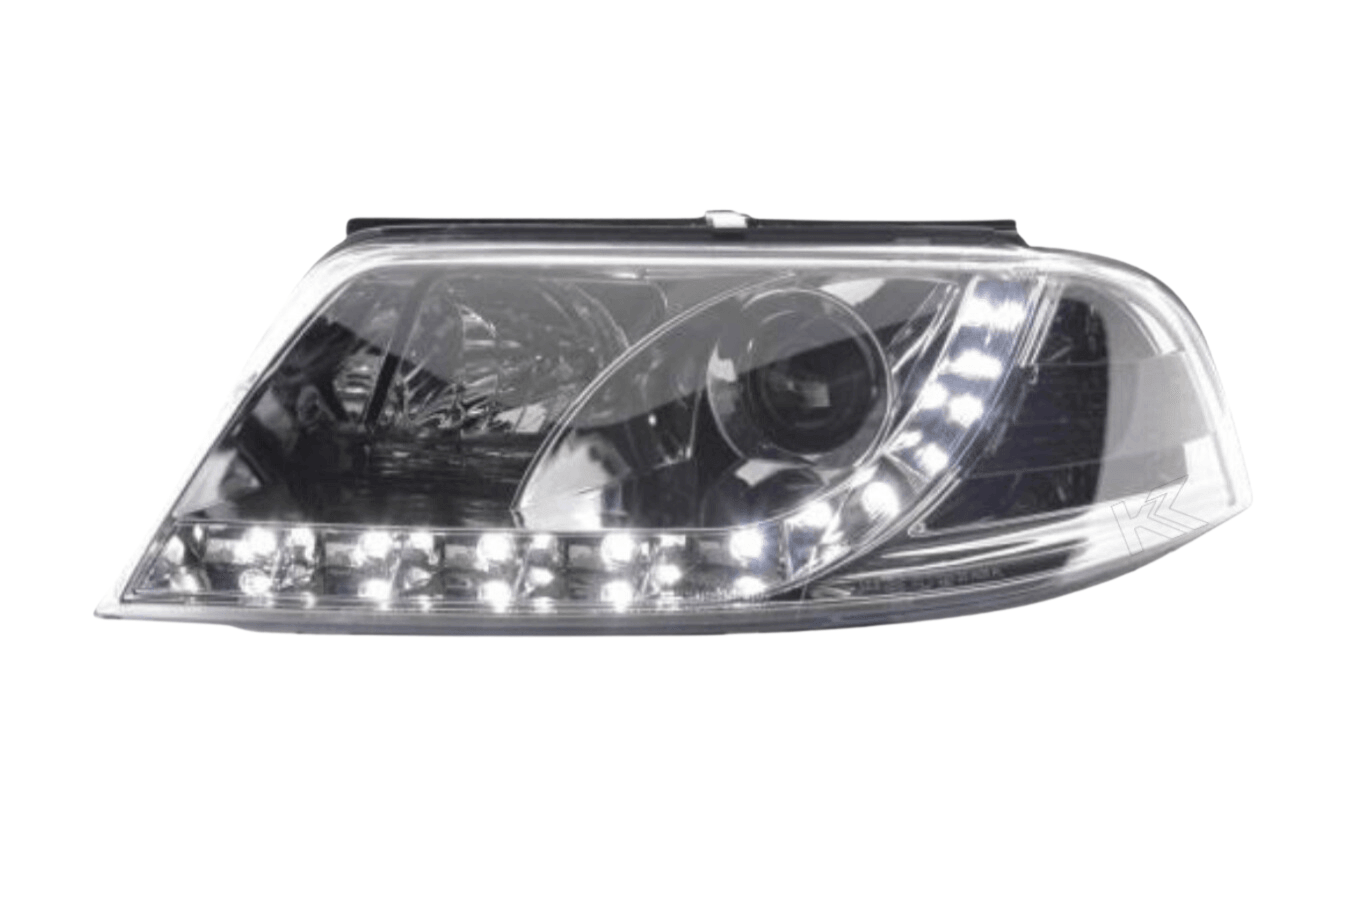 Volkswagen Passat (B5 / 3BG) Chrome LED Headlights with Daytime Running Lights (2000 - 2005) - K2 Industries